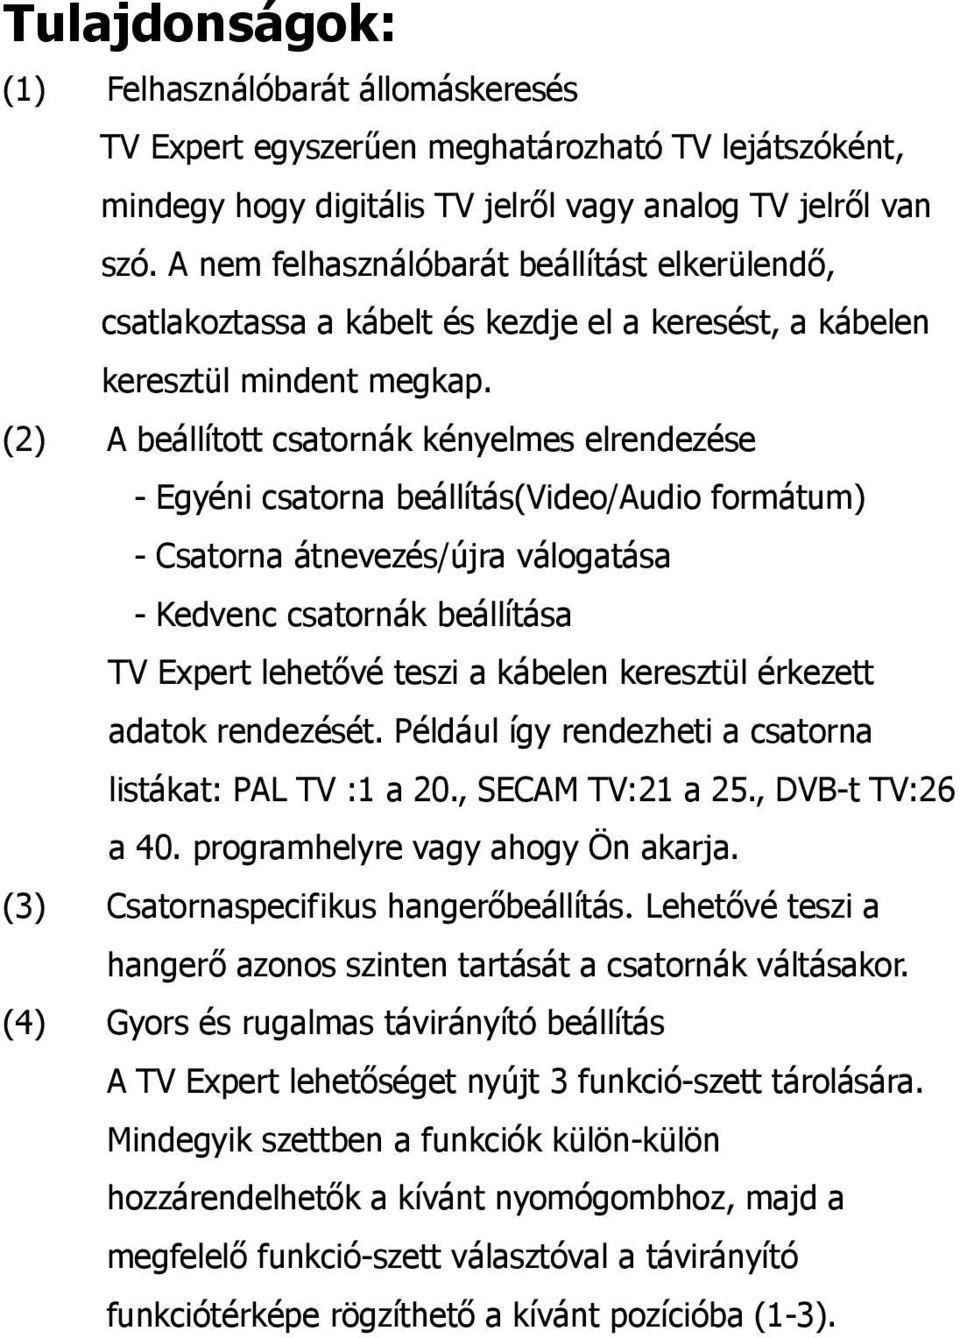 (2) A beállított csatornák kényelmes elrendezése - Egyéni csatorna beállítás(video/audio formátum) - Csatorna átnevezés/újra válogatása - Kedvenc csatornák beállítása TV Expert lehetővé teszi a